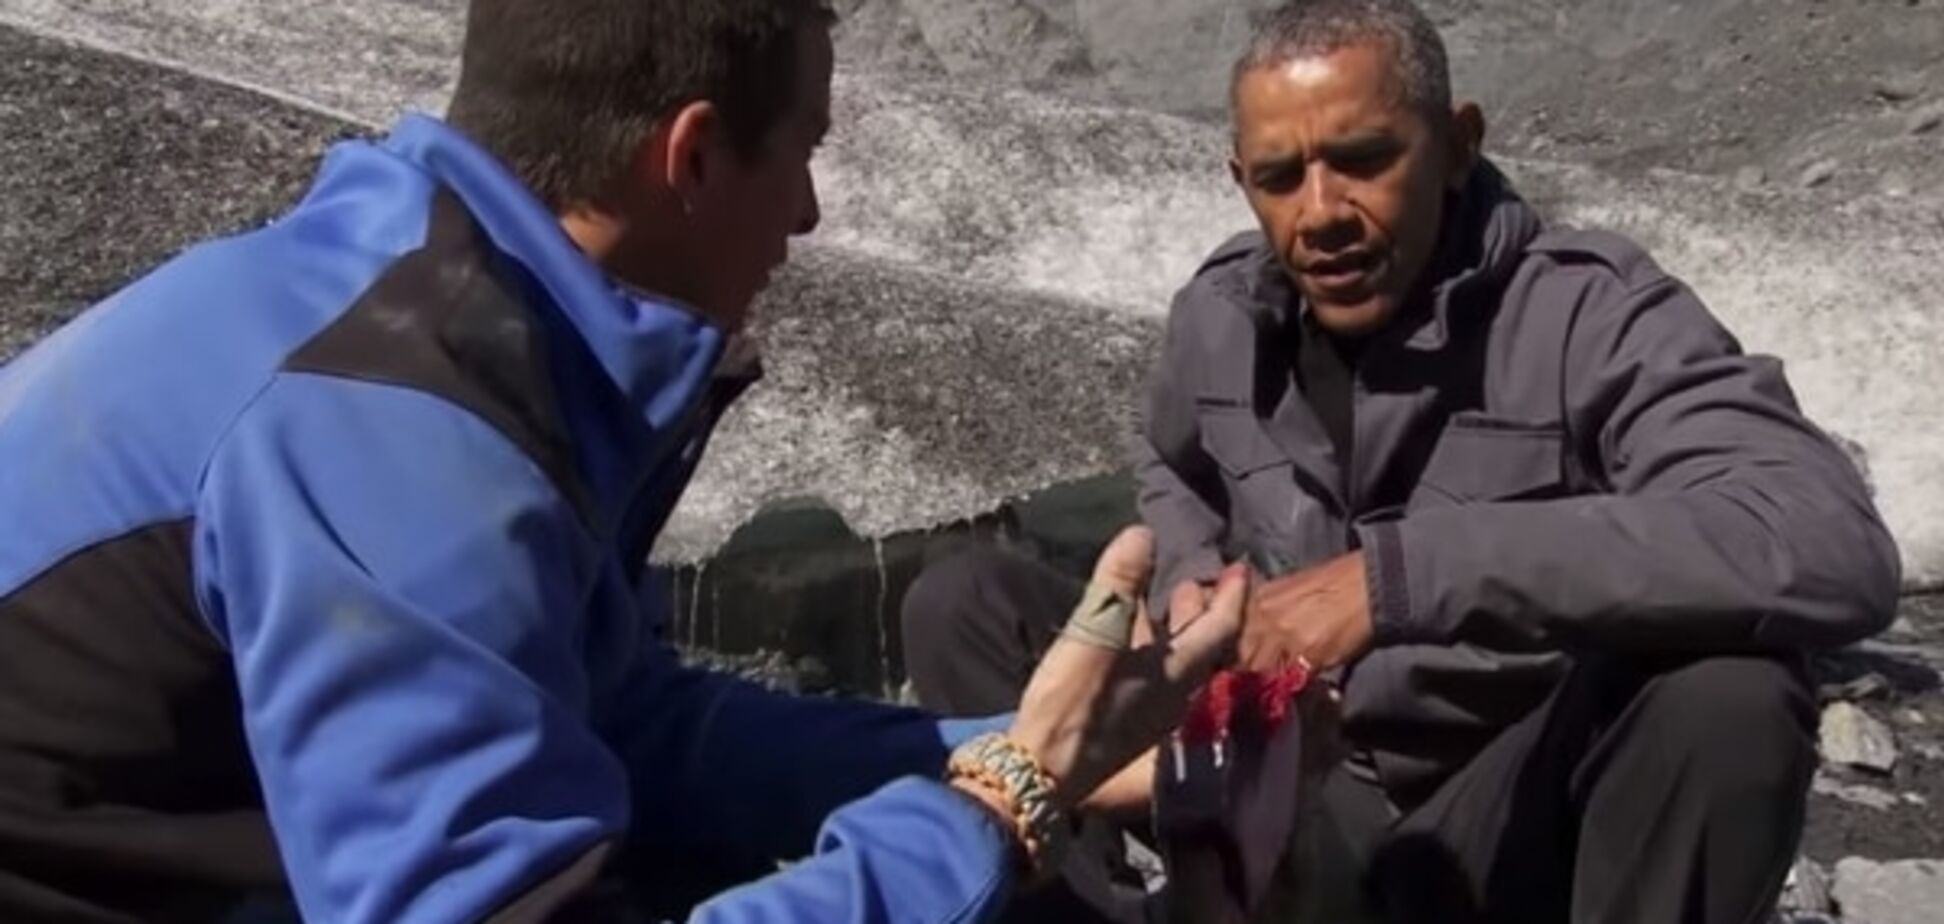 Обама в эфире доел за медведем лосося: видеофакт